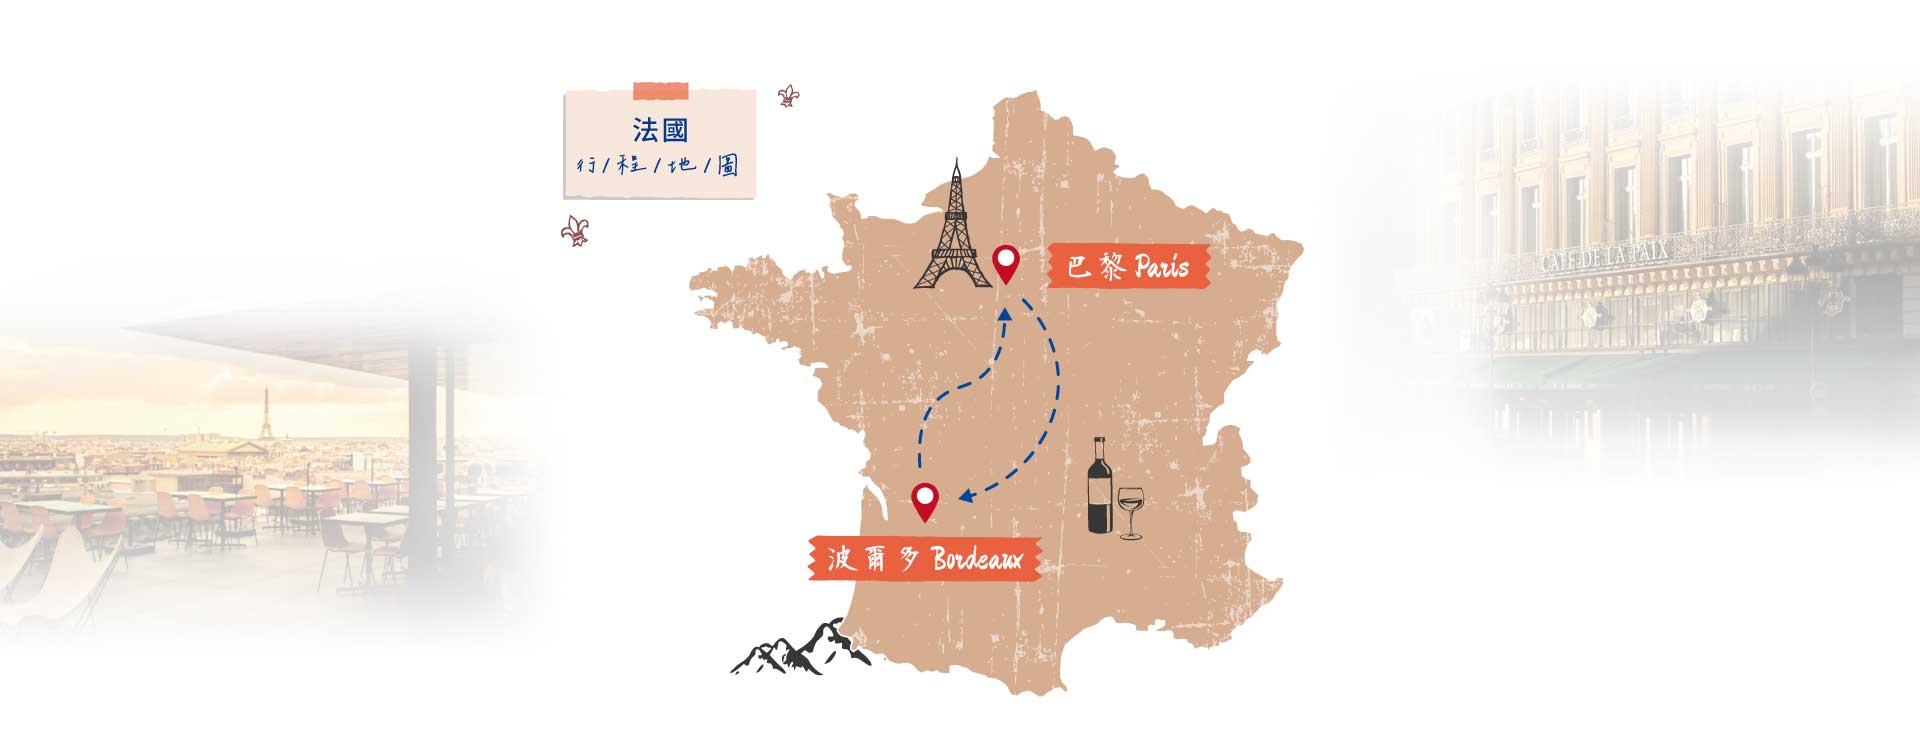 鷹飛國際旅行社 Infinity Tour | 法國巴黎‧波爾多 | 法式酒莊之旅